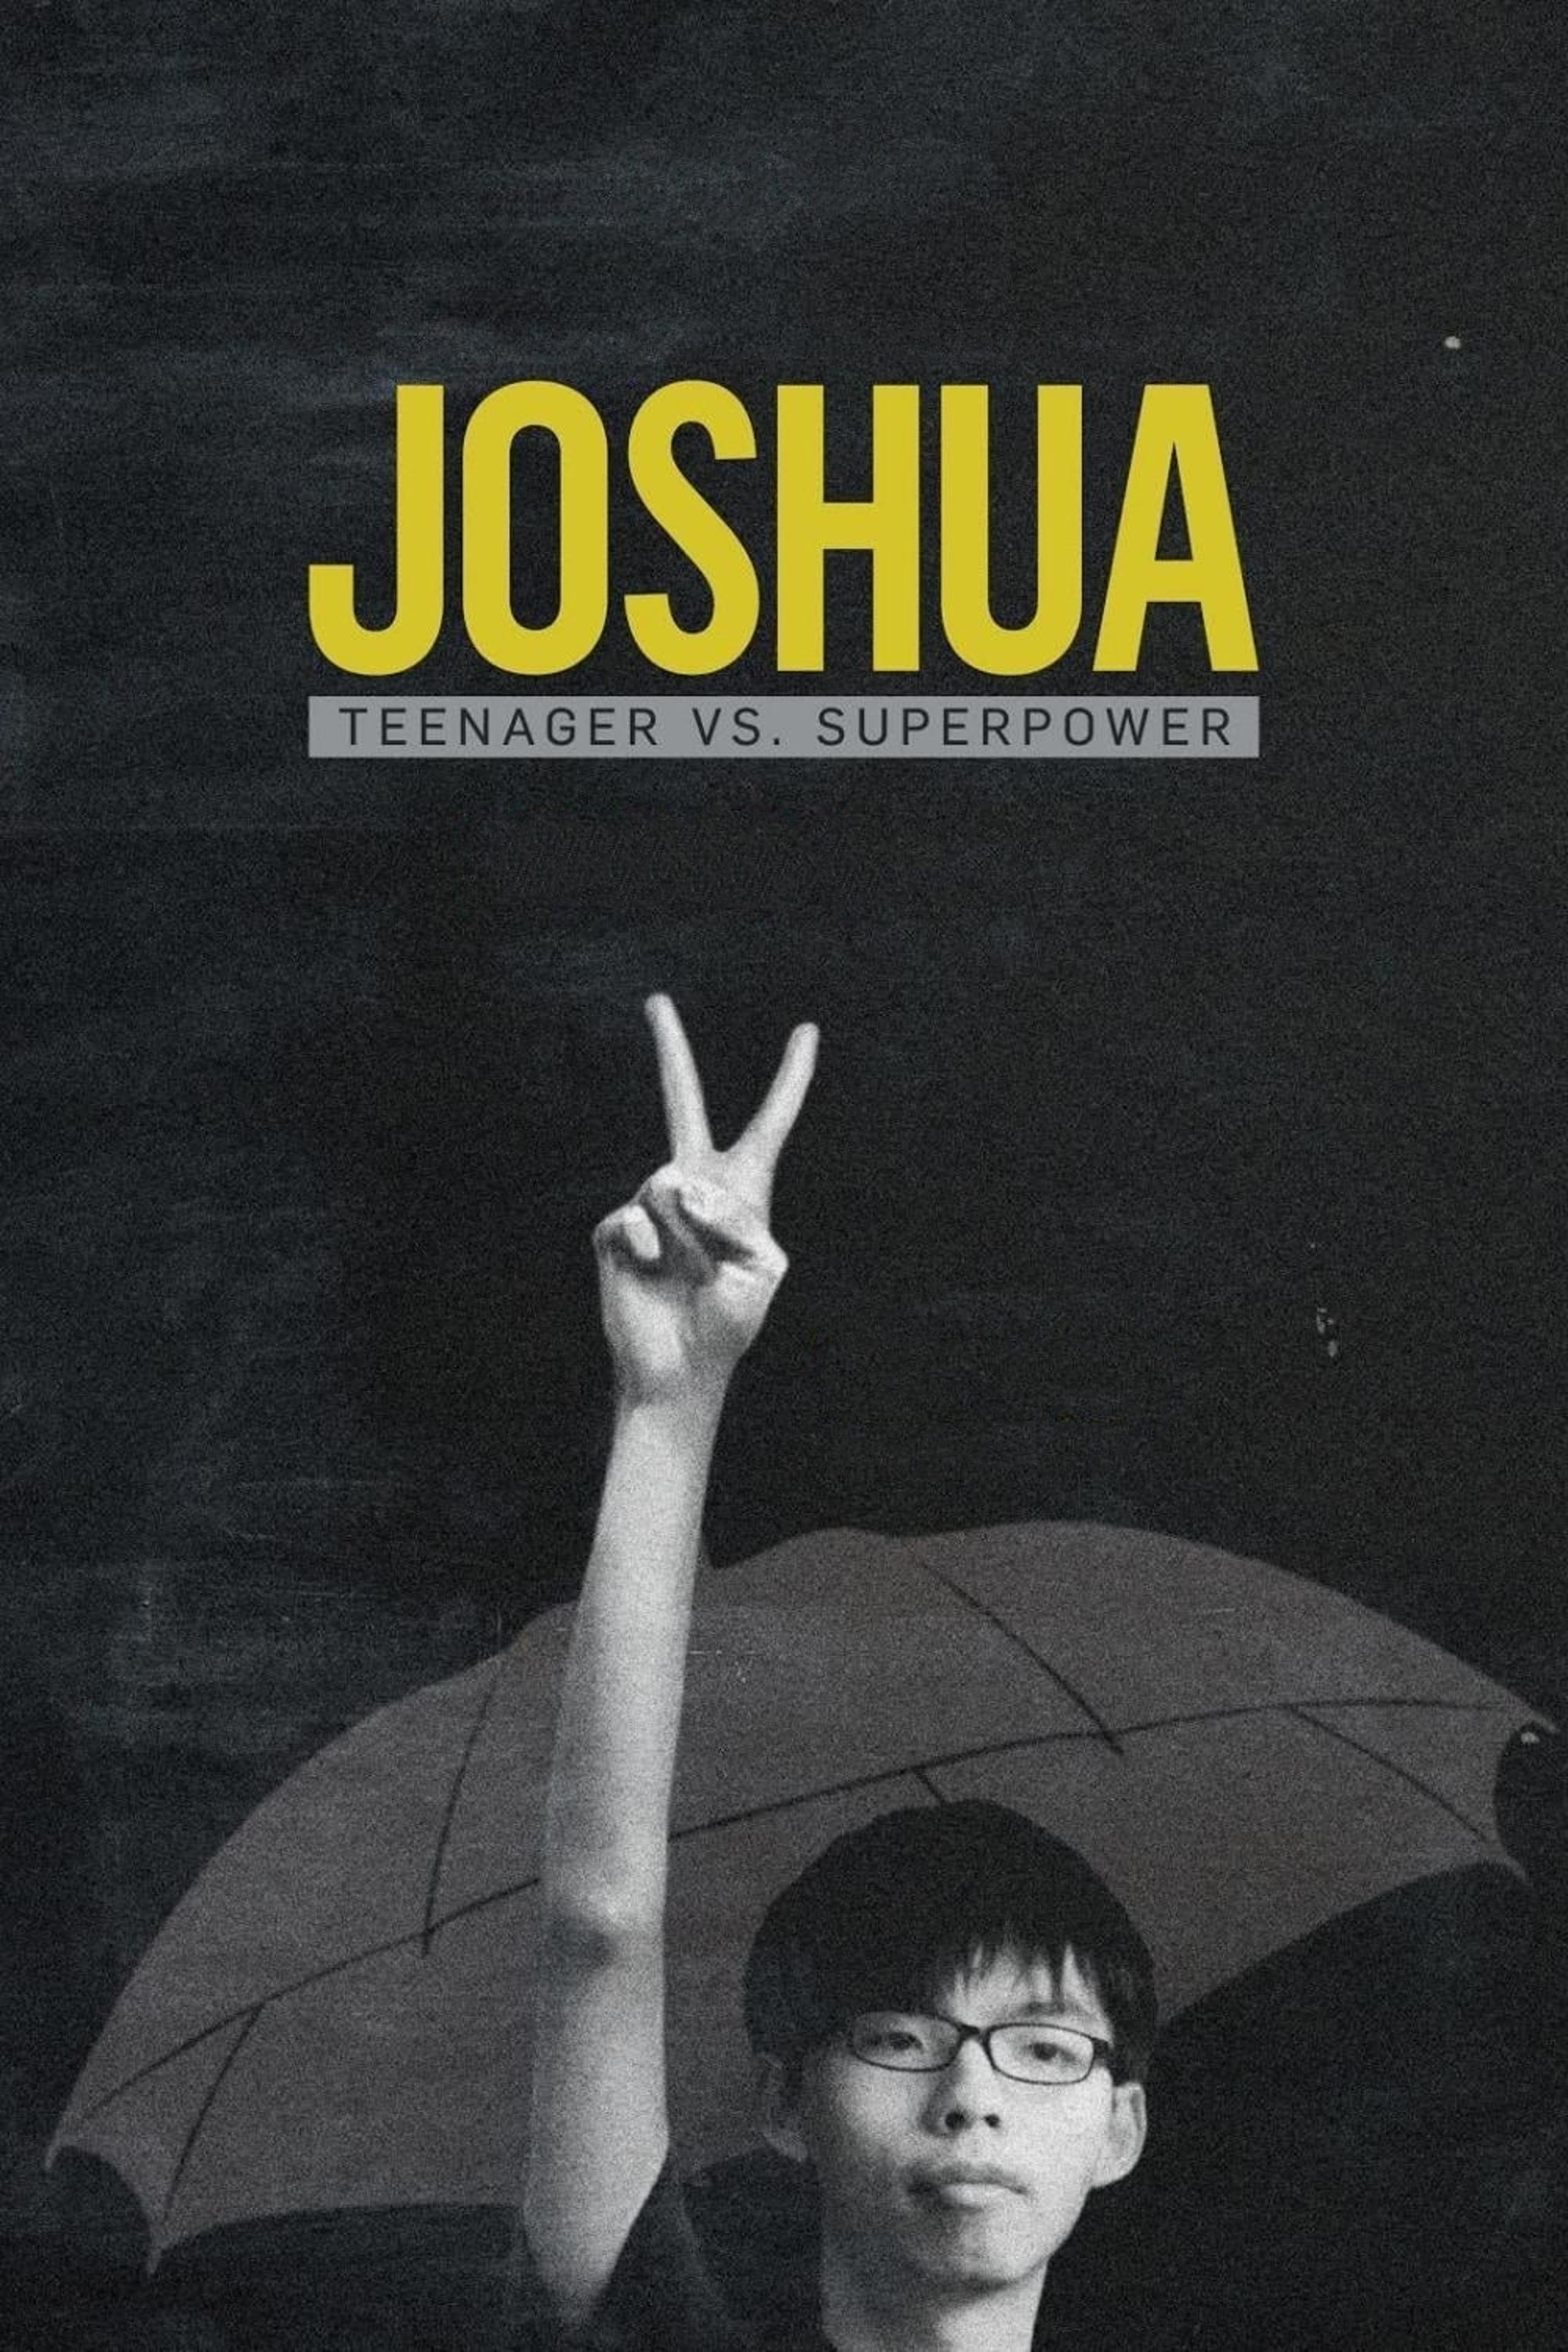 Joshua: Thiếu niên chống lại Siêu cường